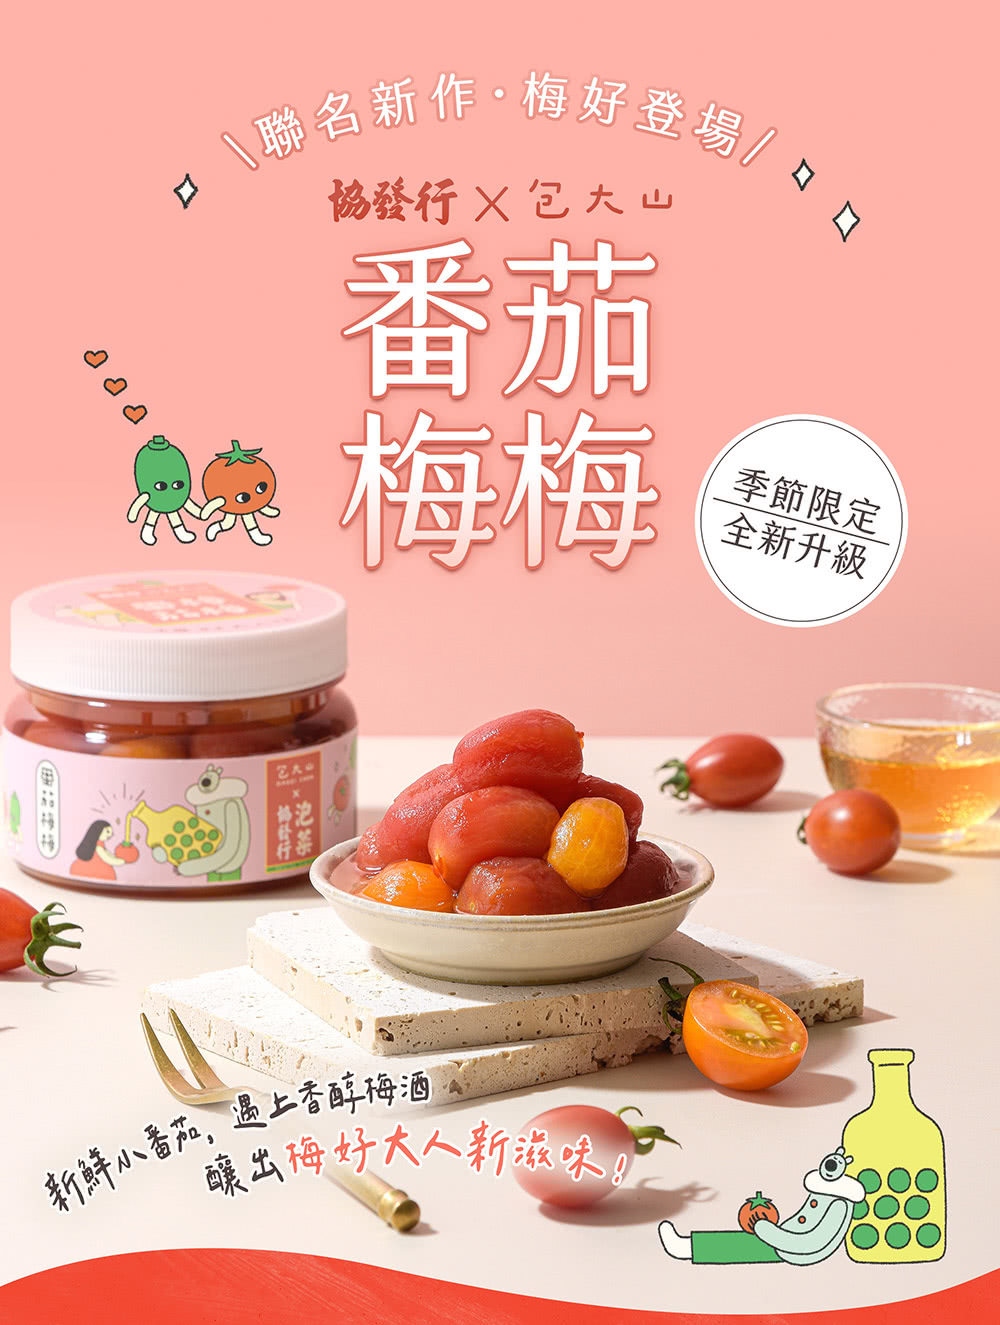 協發行泡菜 番茄梅梅4瓶組 420g/瓶(新品上市｜限量販售